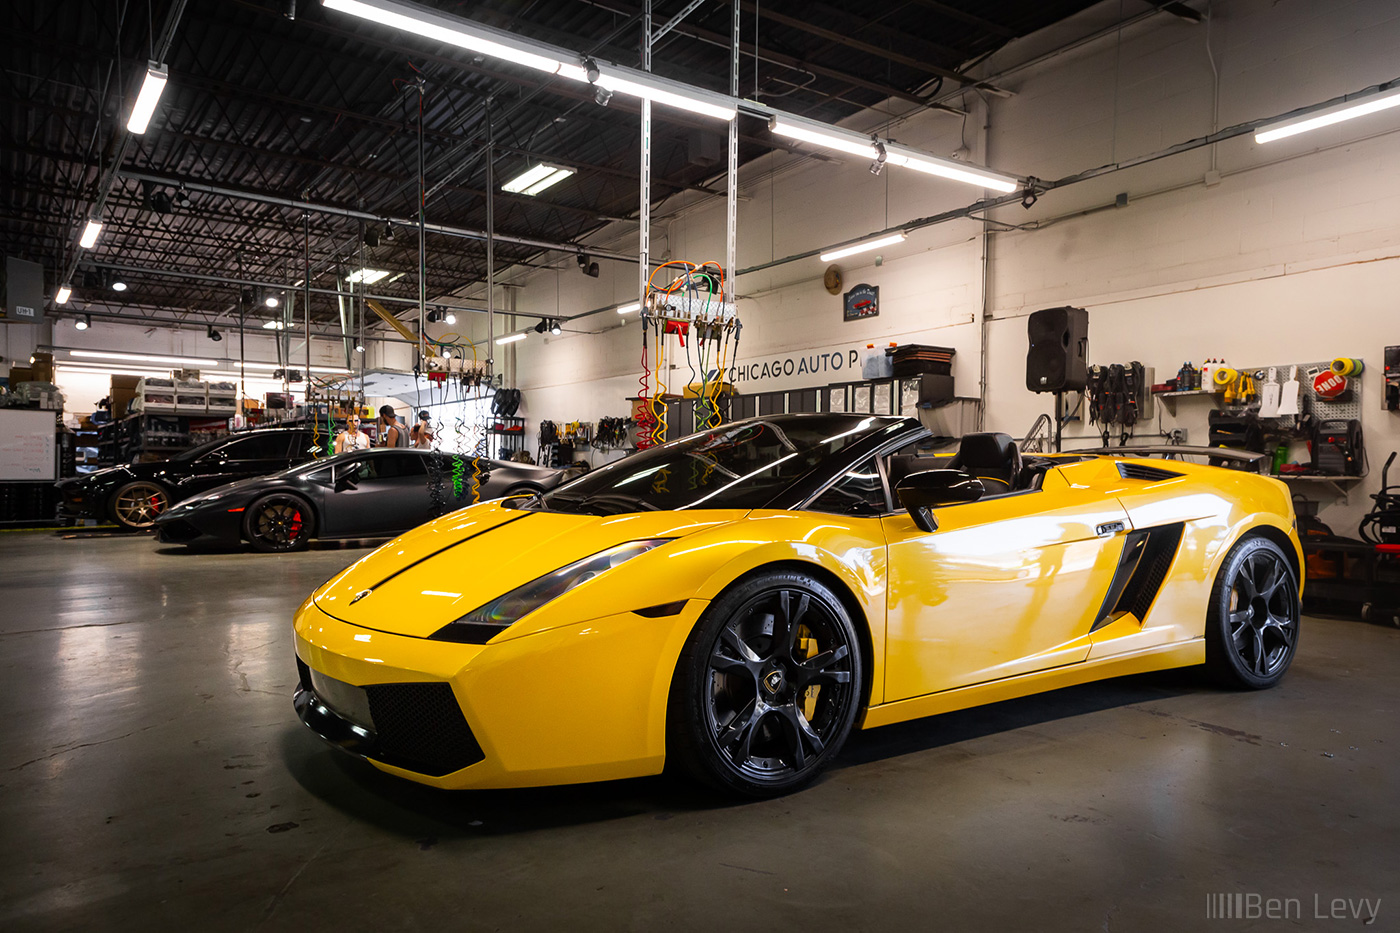 Yellow Lamborghini Gallardo Spider at Chicago Auto Pros in Lombard